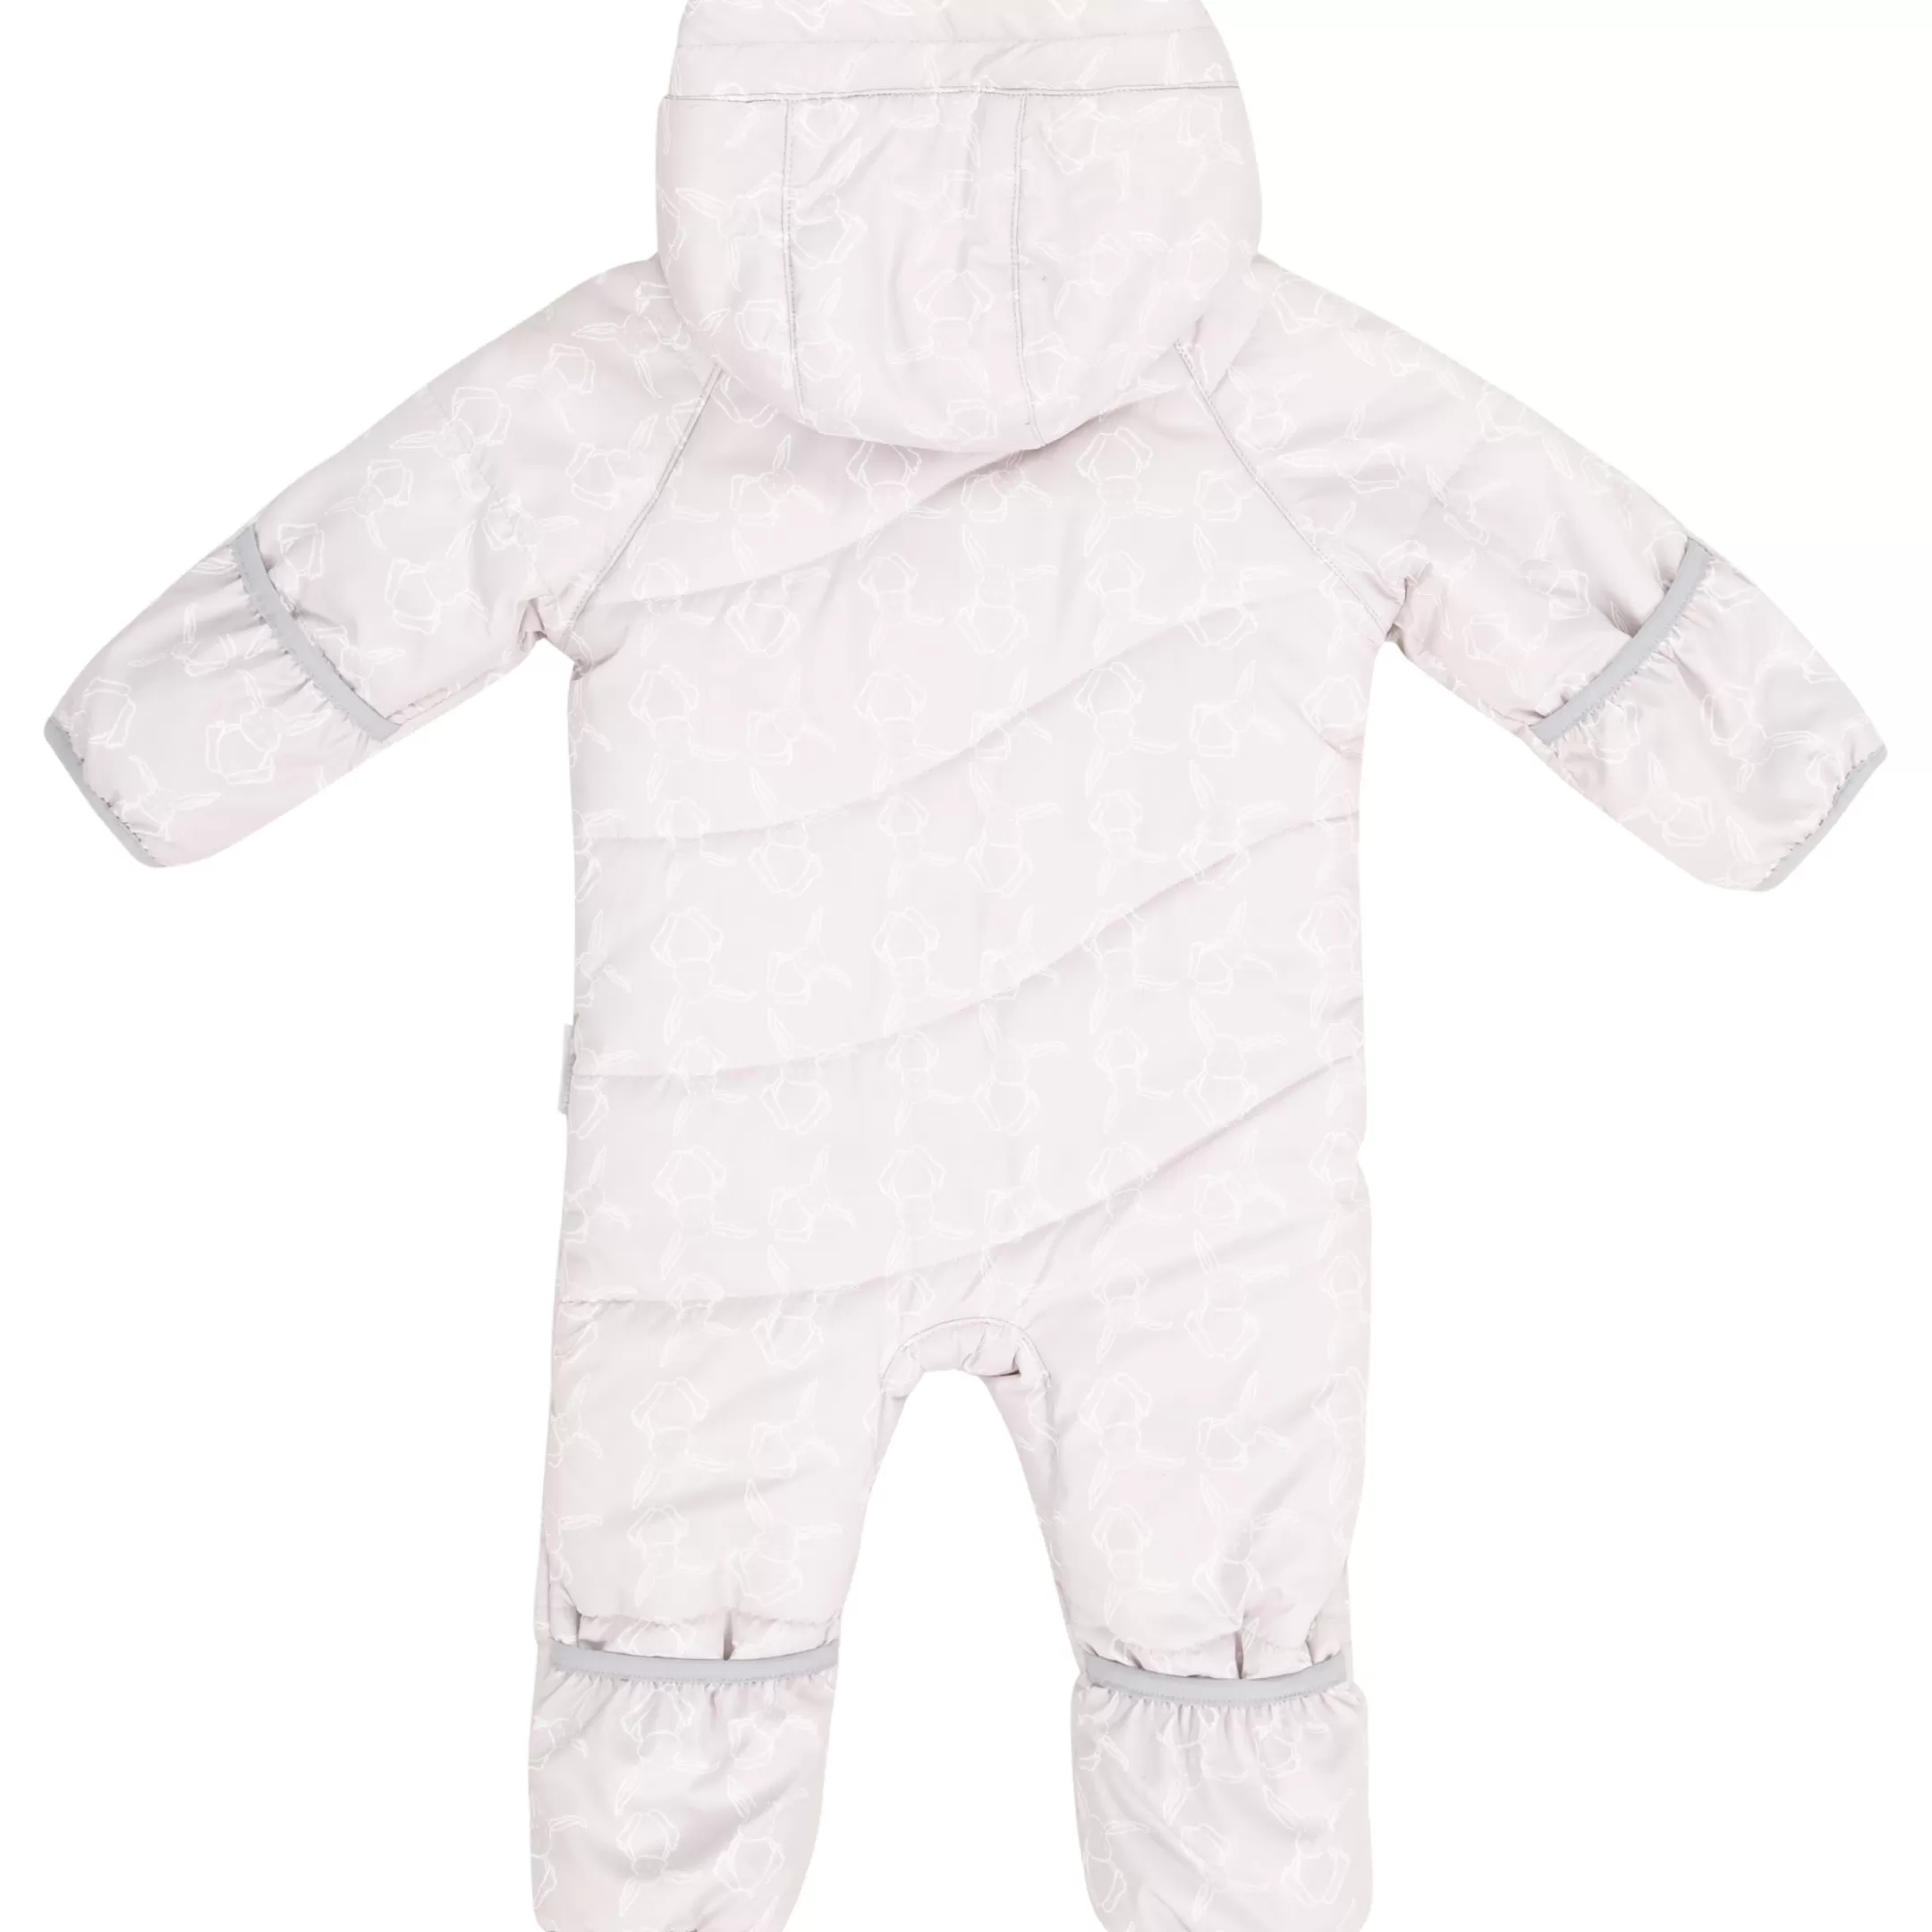 Babies' Snow Suit Adorable | Trespass Sale